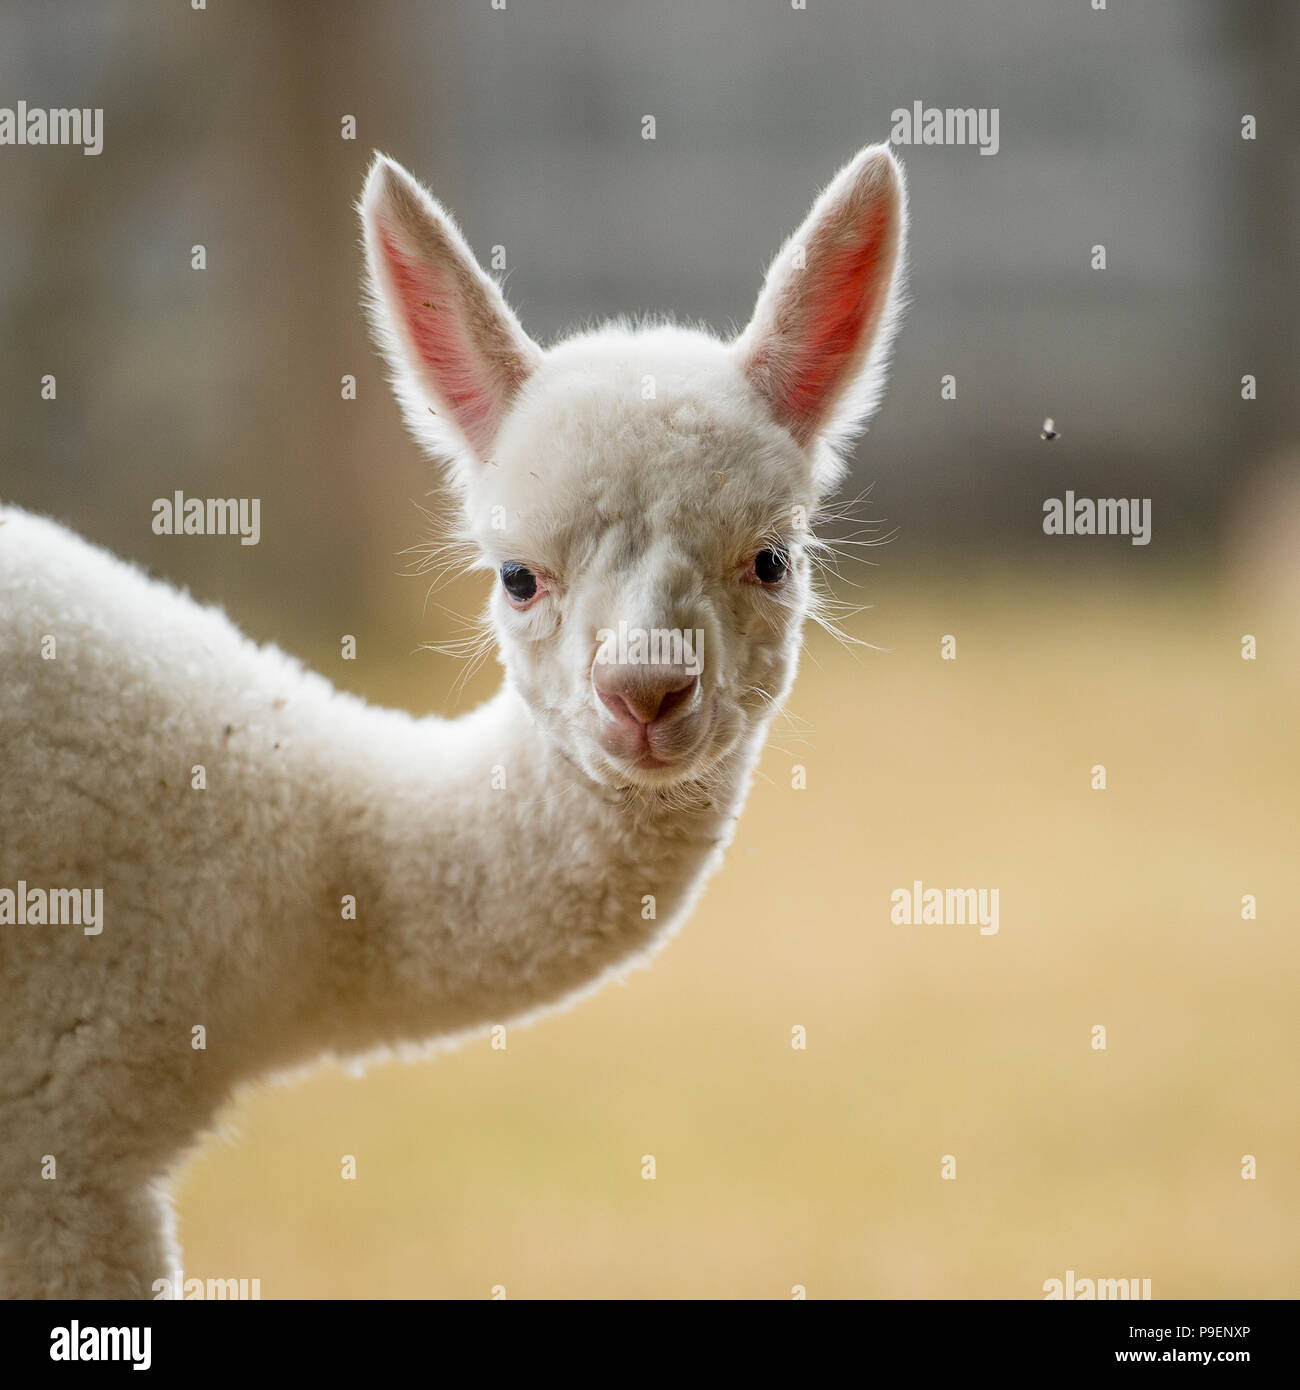 baby alpaca cria Stock Photo